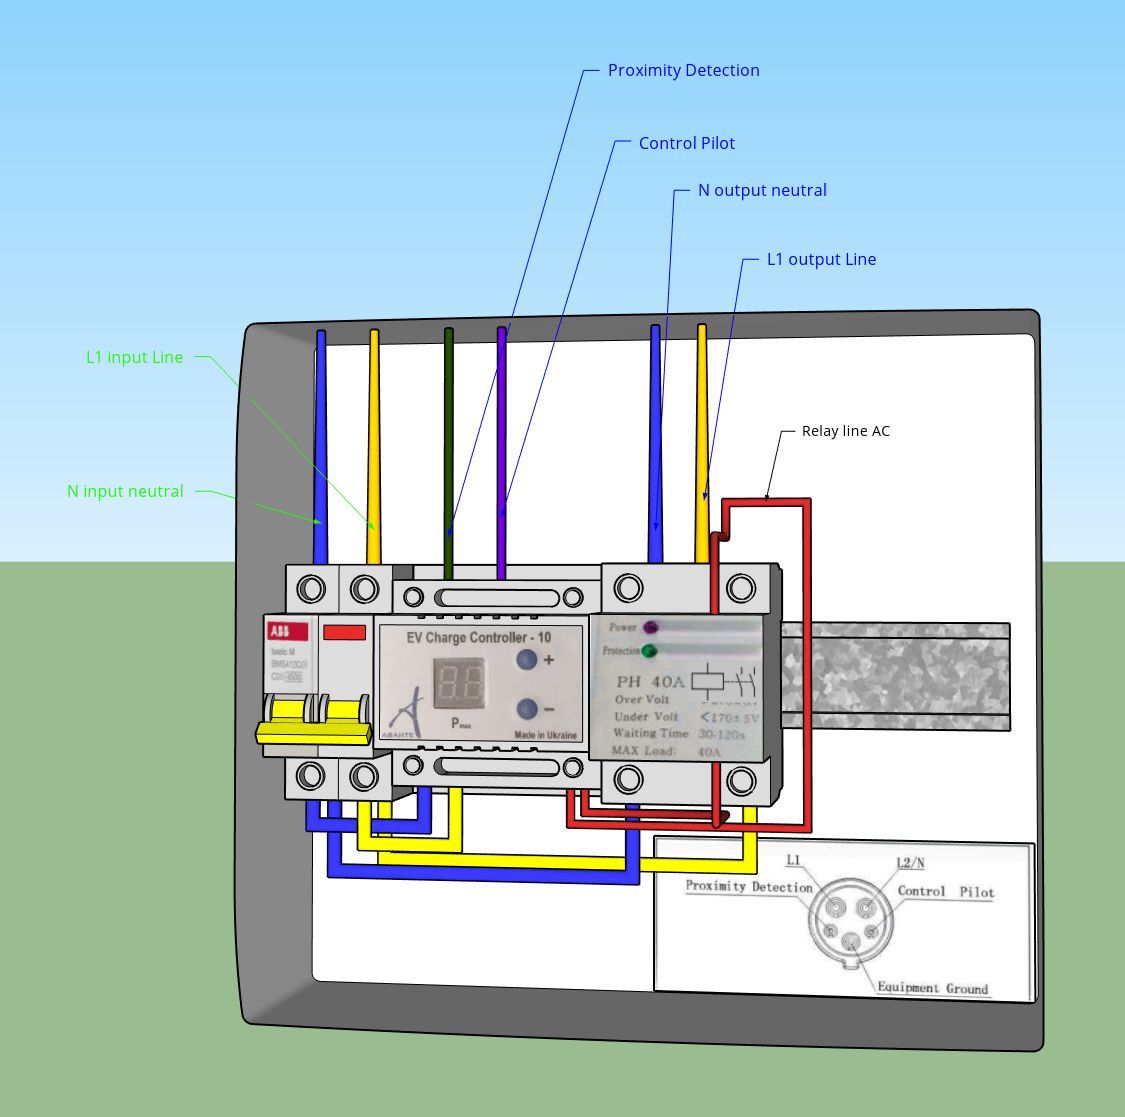 Структурная схема зарядной станции электромобиля